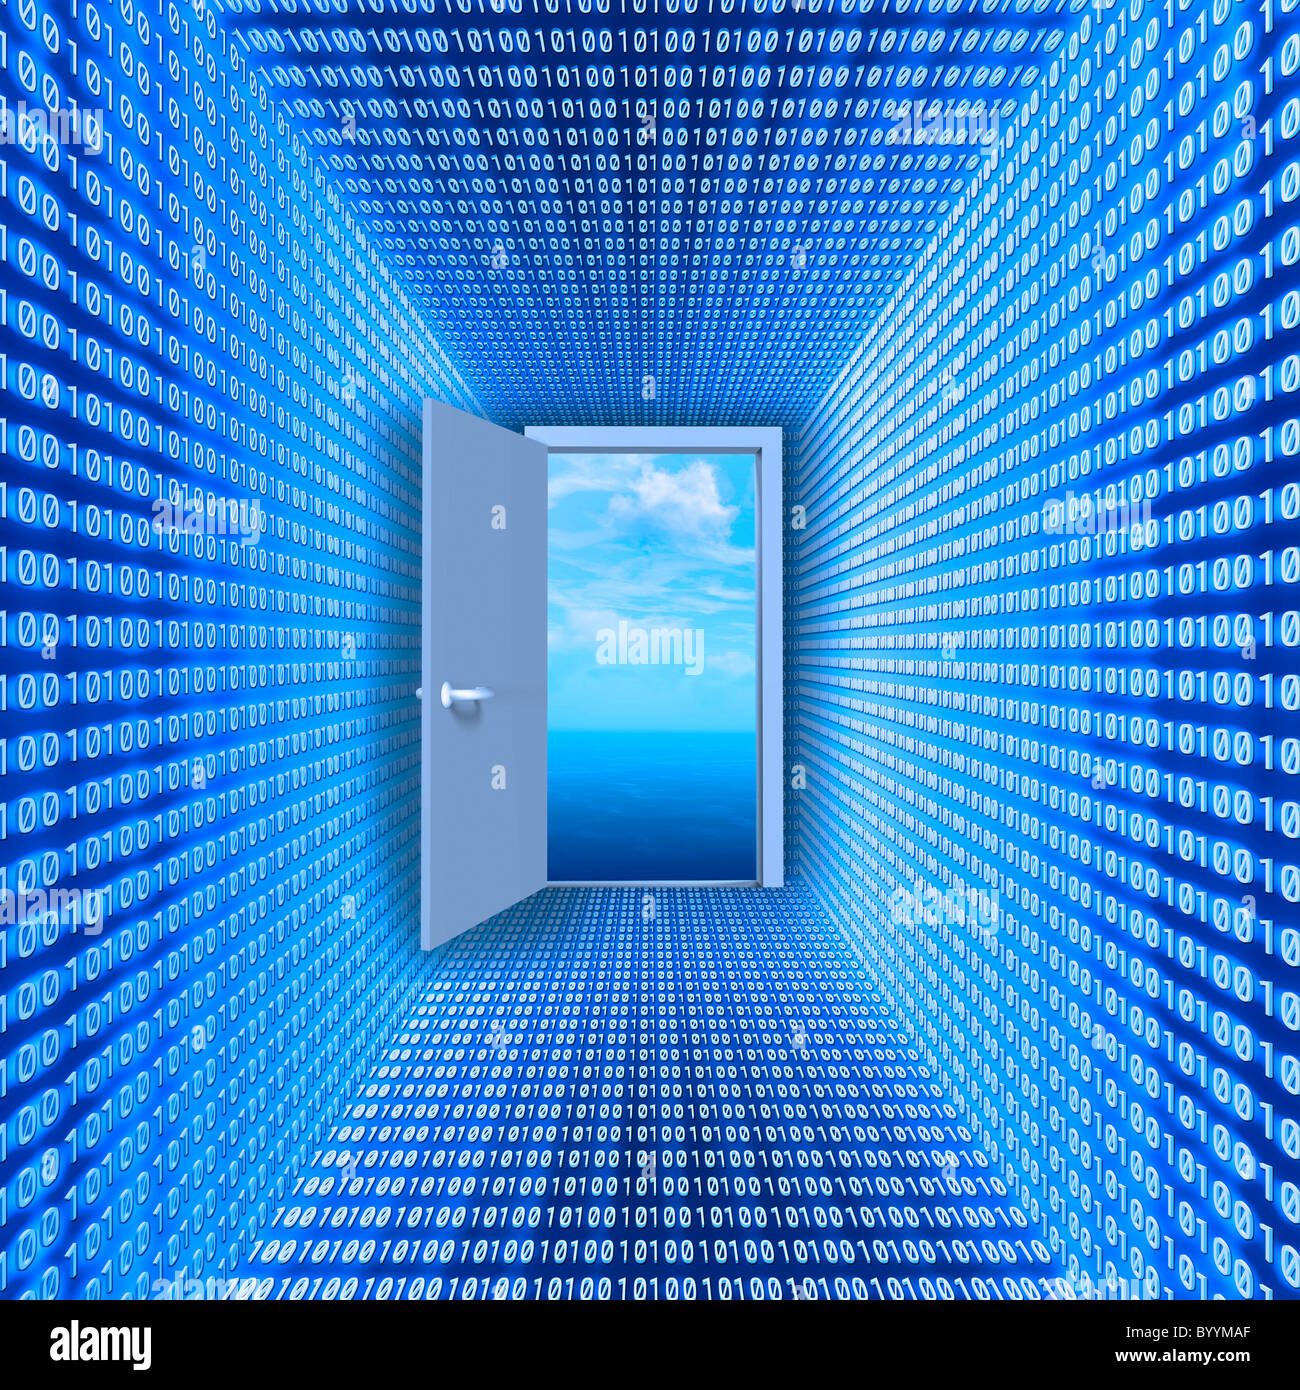 Halle aus Binärcode zur offenen Tür und Wolkengebilde. Konzeptbild: virtuelle Realität. Stockfoto